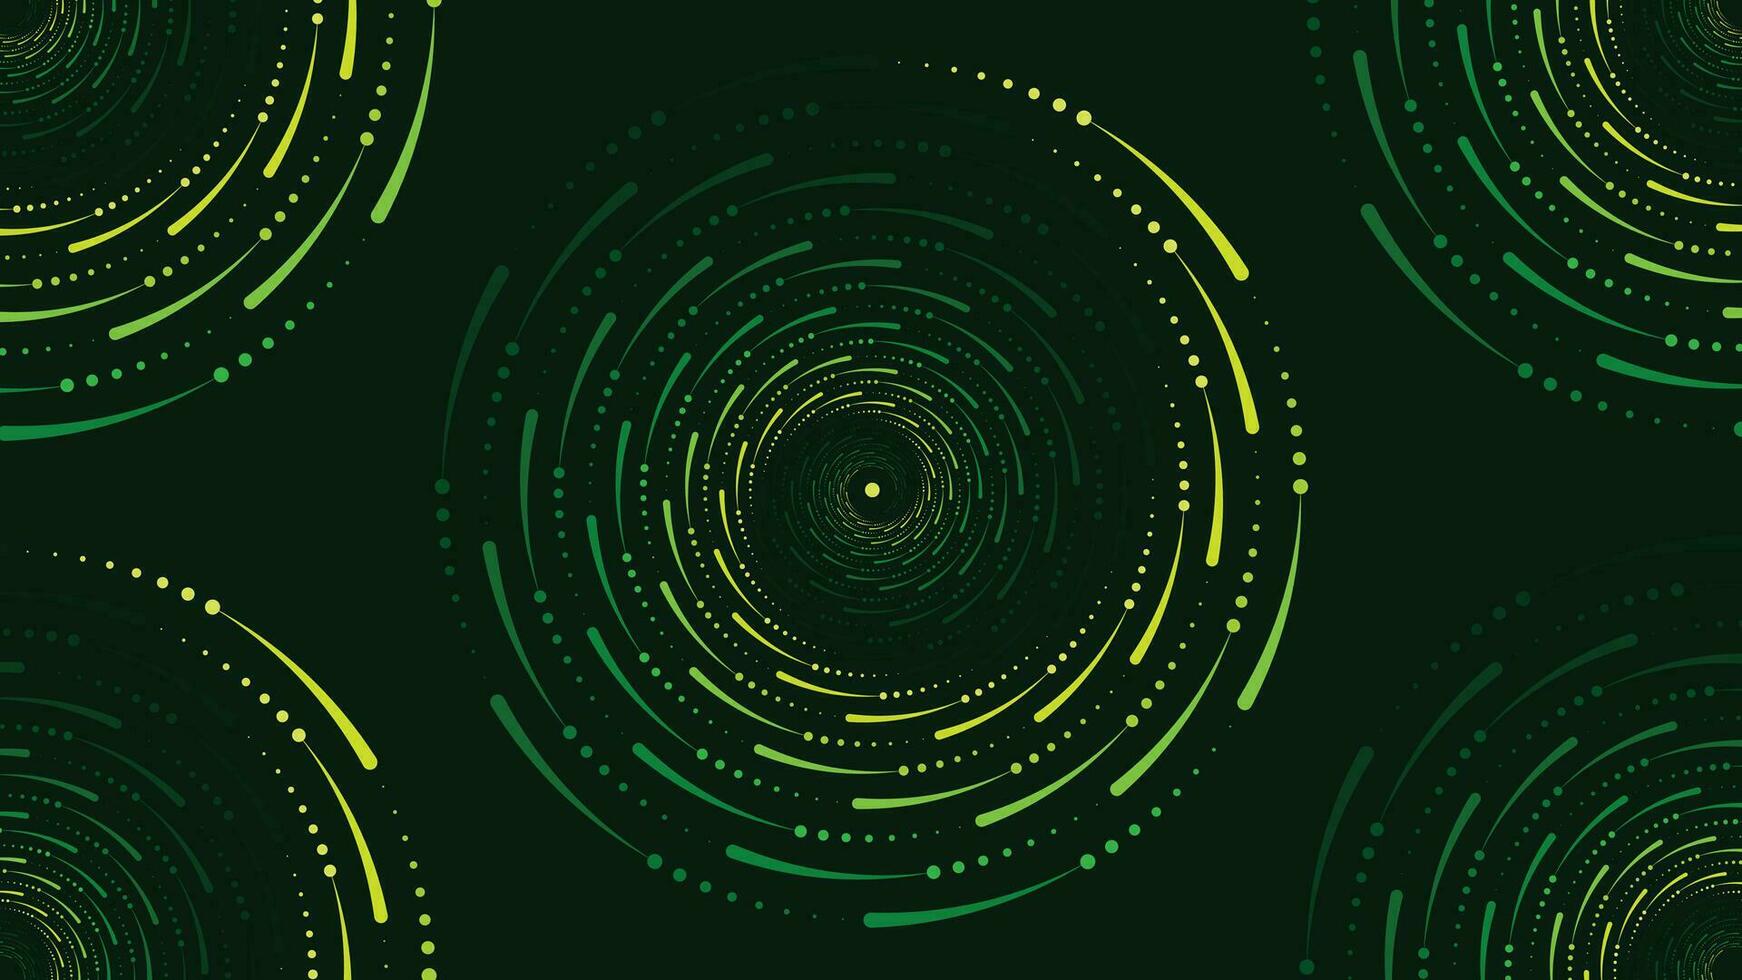 abstarct Spiral- Wirbel Stil Spinnen Hintergrund im dunkel Grün Farbe. vektor